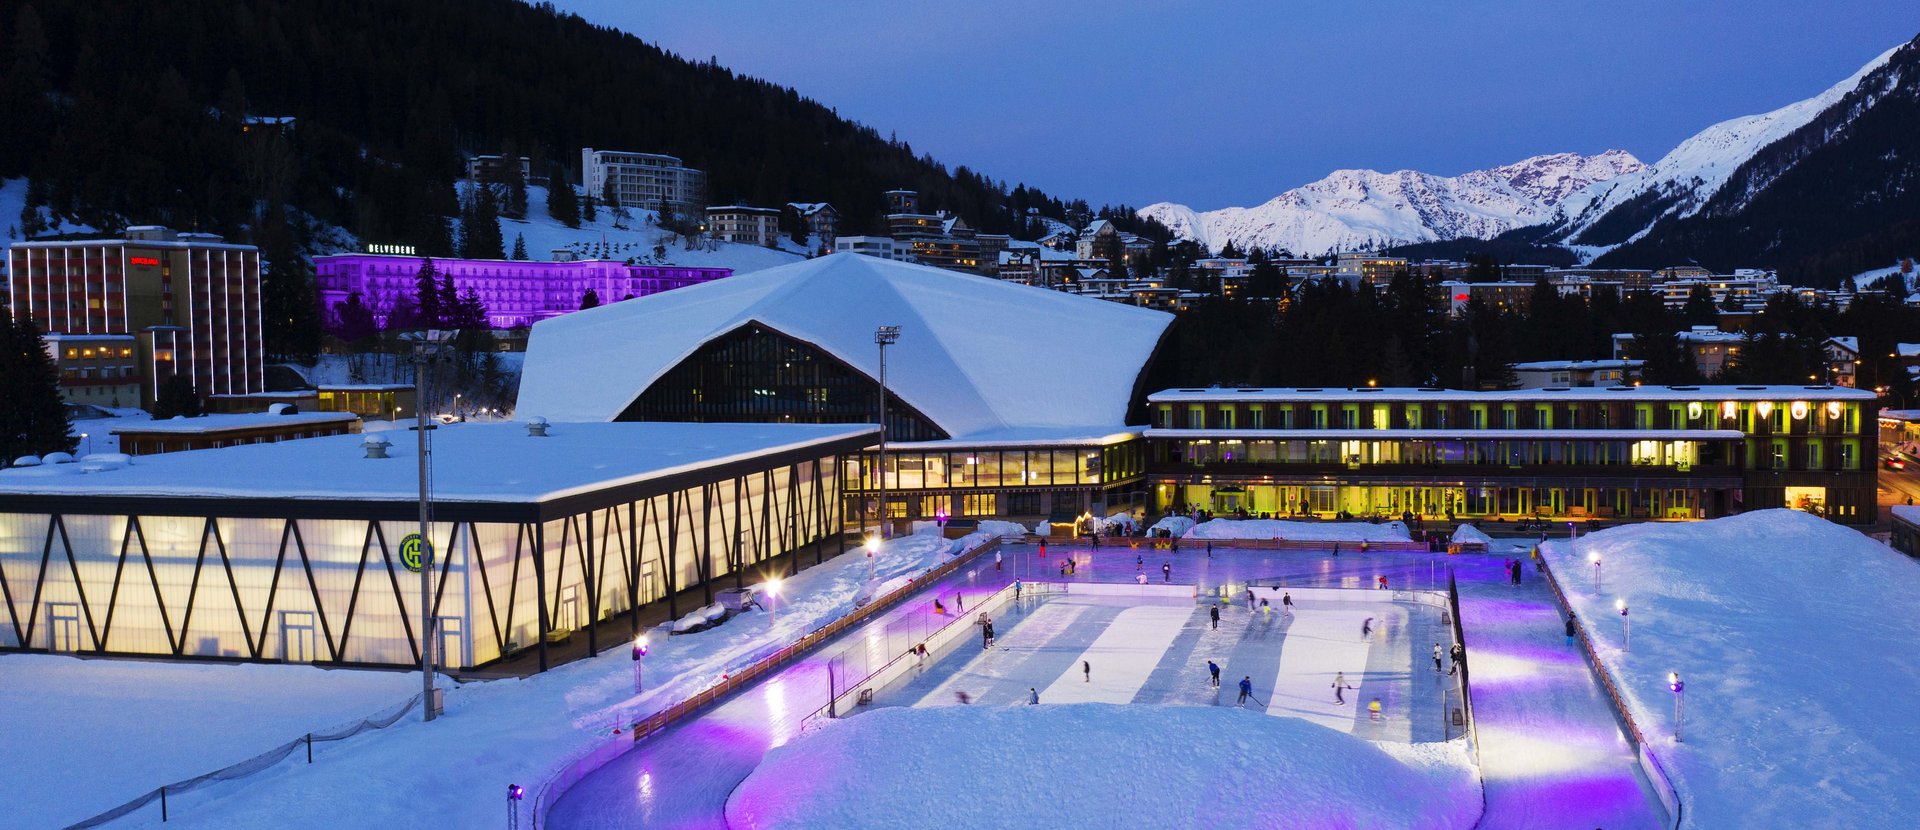 Eislaufen & Eisschnelllauf Davos